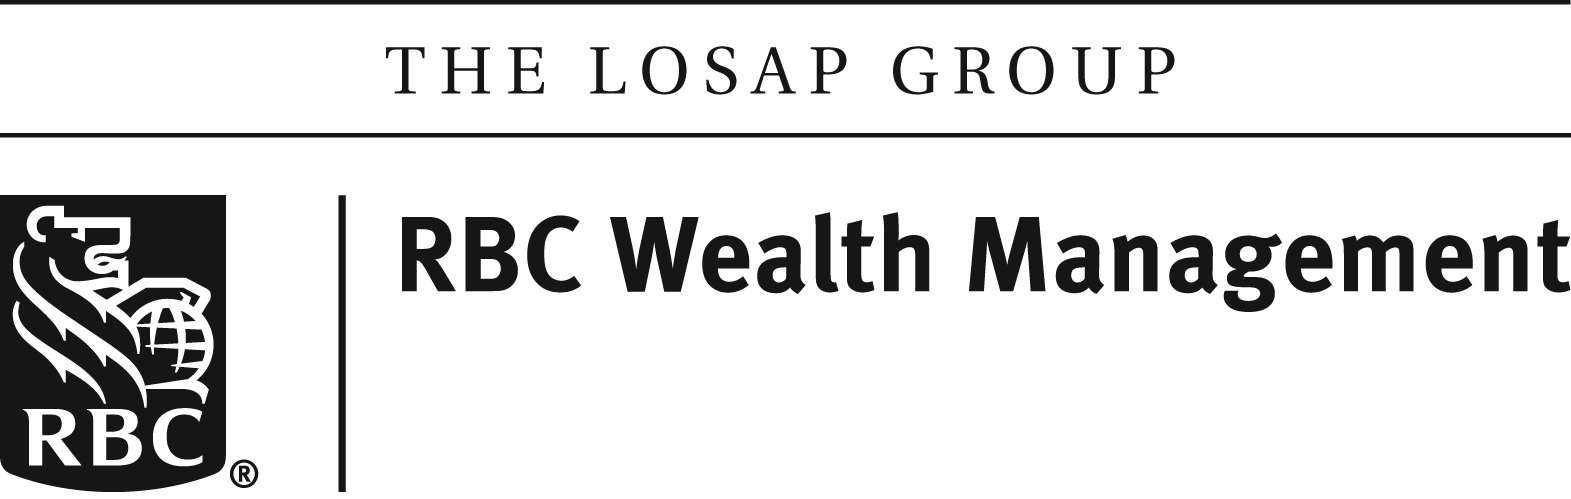 LOSAP RBC Wealth Management